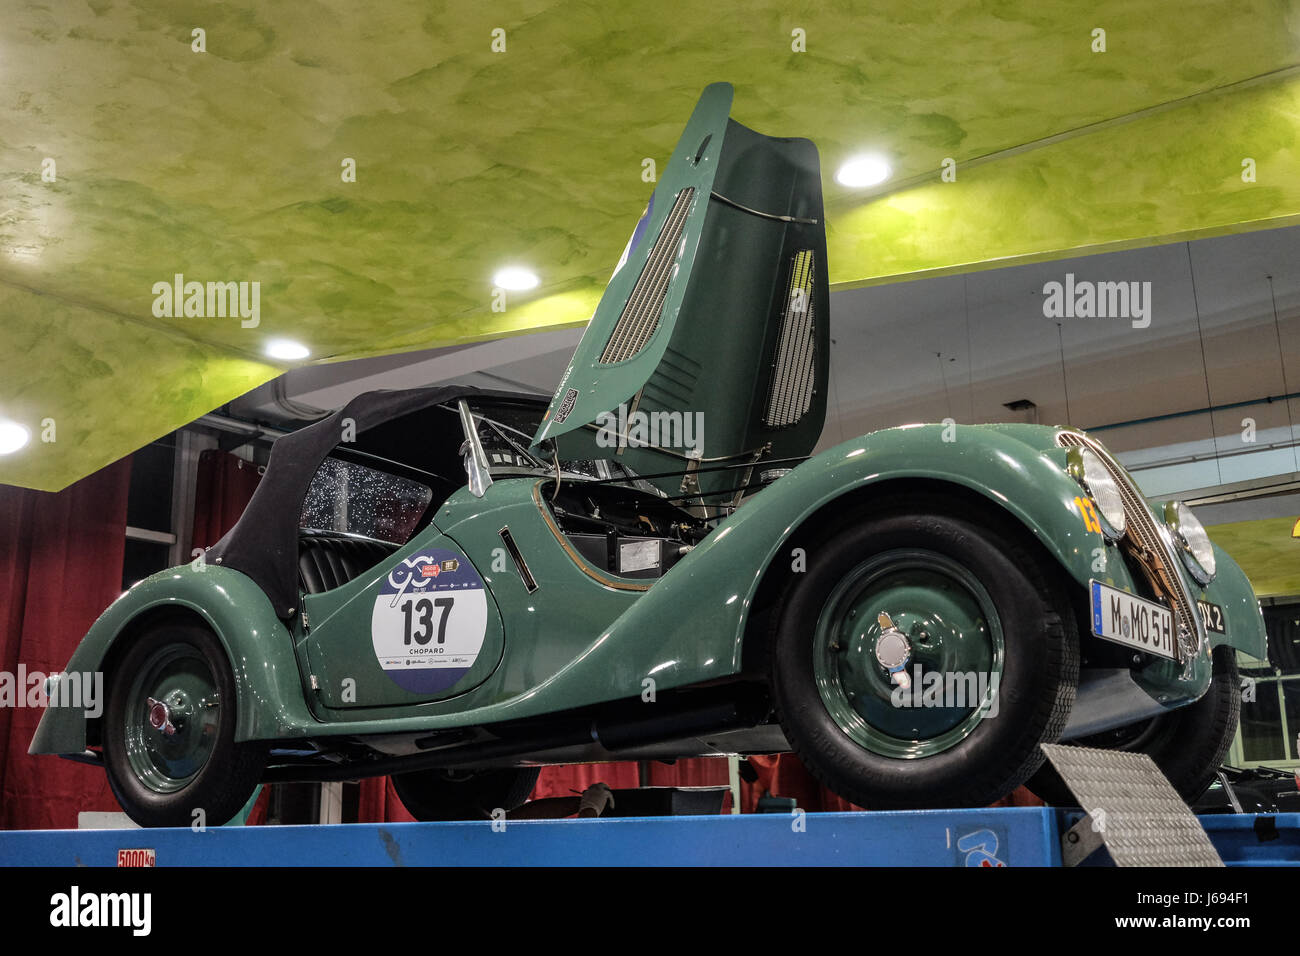 Rome, Italie. 19 mai, 2017. Les voitures de la Mille Miglia 2017 en réparation dans un garage après leur arrivée à Rome Crédit : Realy Easy Star/Alamy Live News Banque D'Images